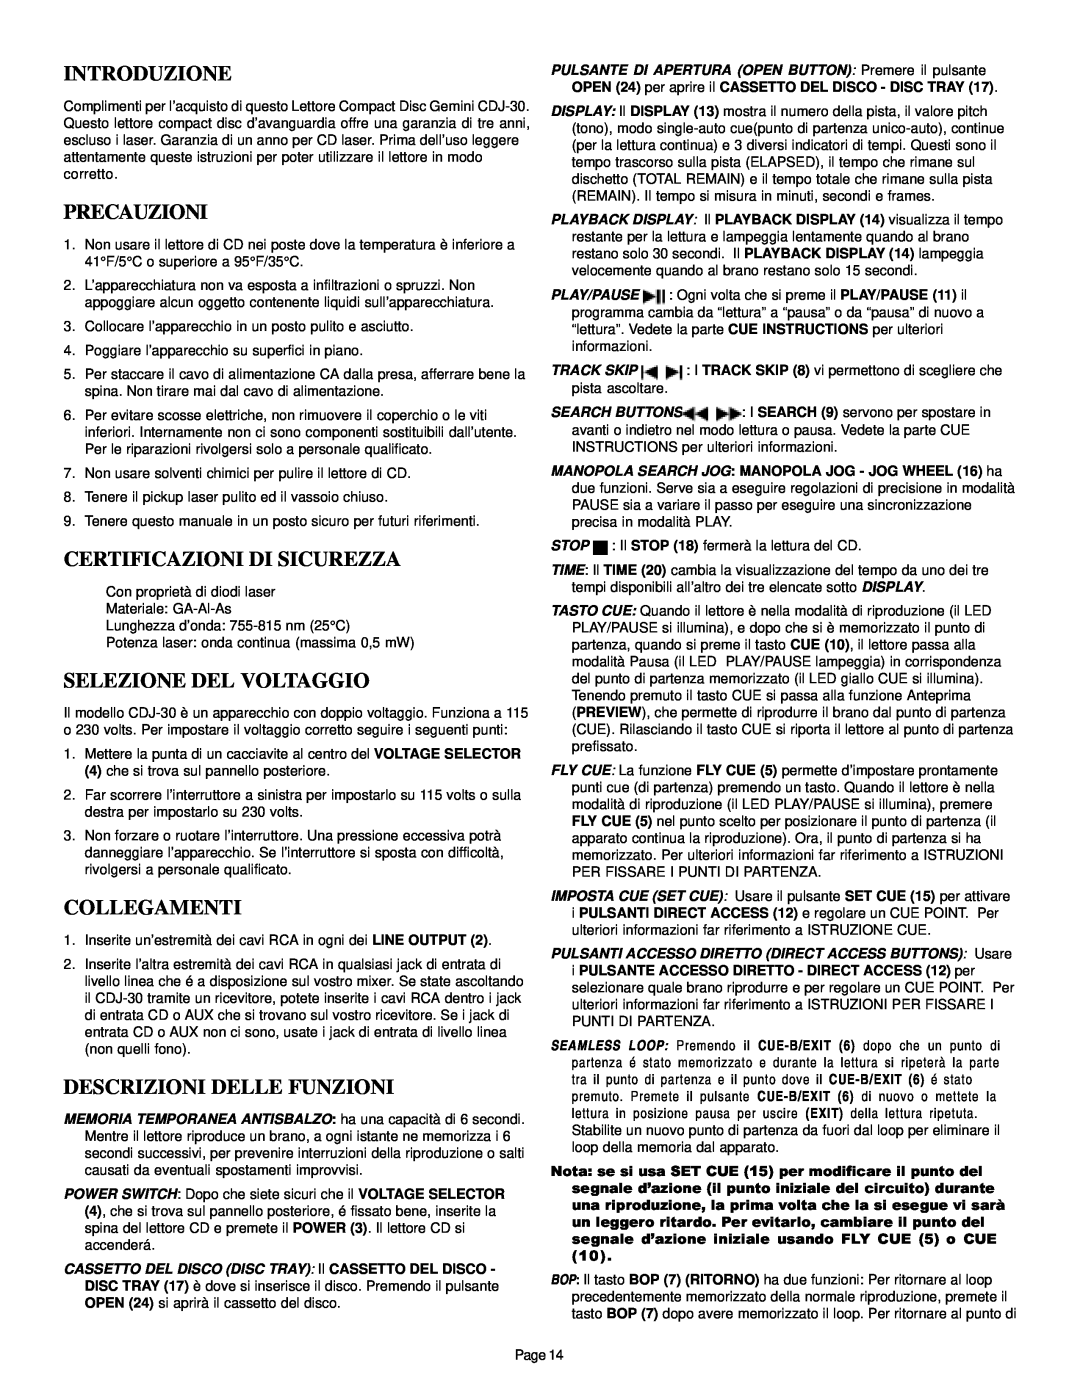 Gemini CDJ-30 manual Introduzione, Precauzioni, Certificazioni Di Sicurezza, Selezione Del Voltaggio, Collegamenti 